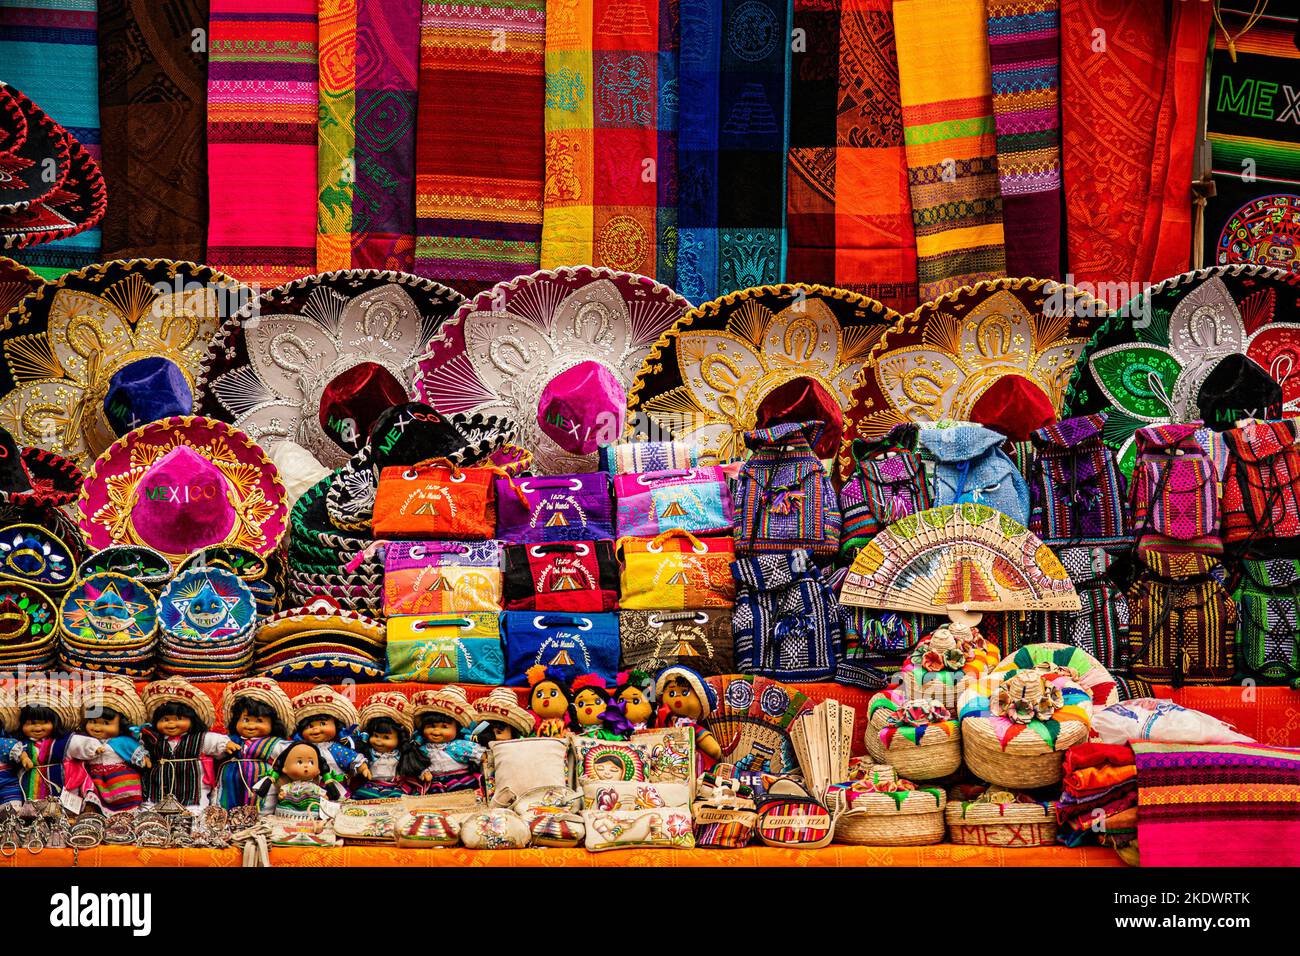 Farbenfrohe souvenirs aus Han-Souvenirs, die am lokalen Marktstand der archäologischen Stätte Chichen-Itza gestapelt wurden. Stockfoto